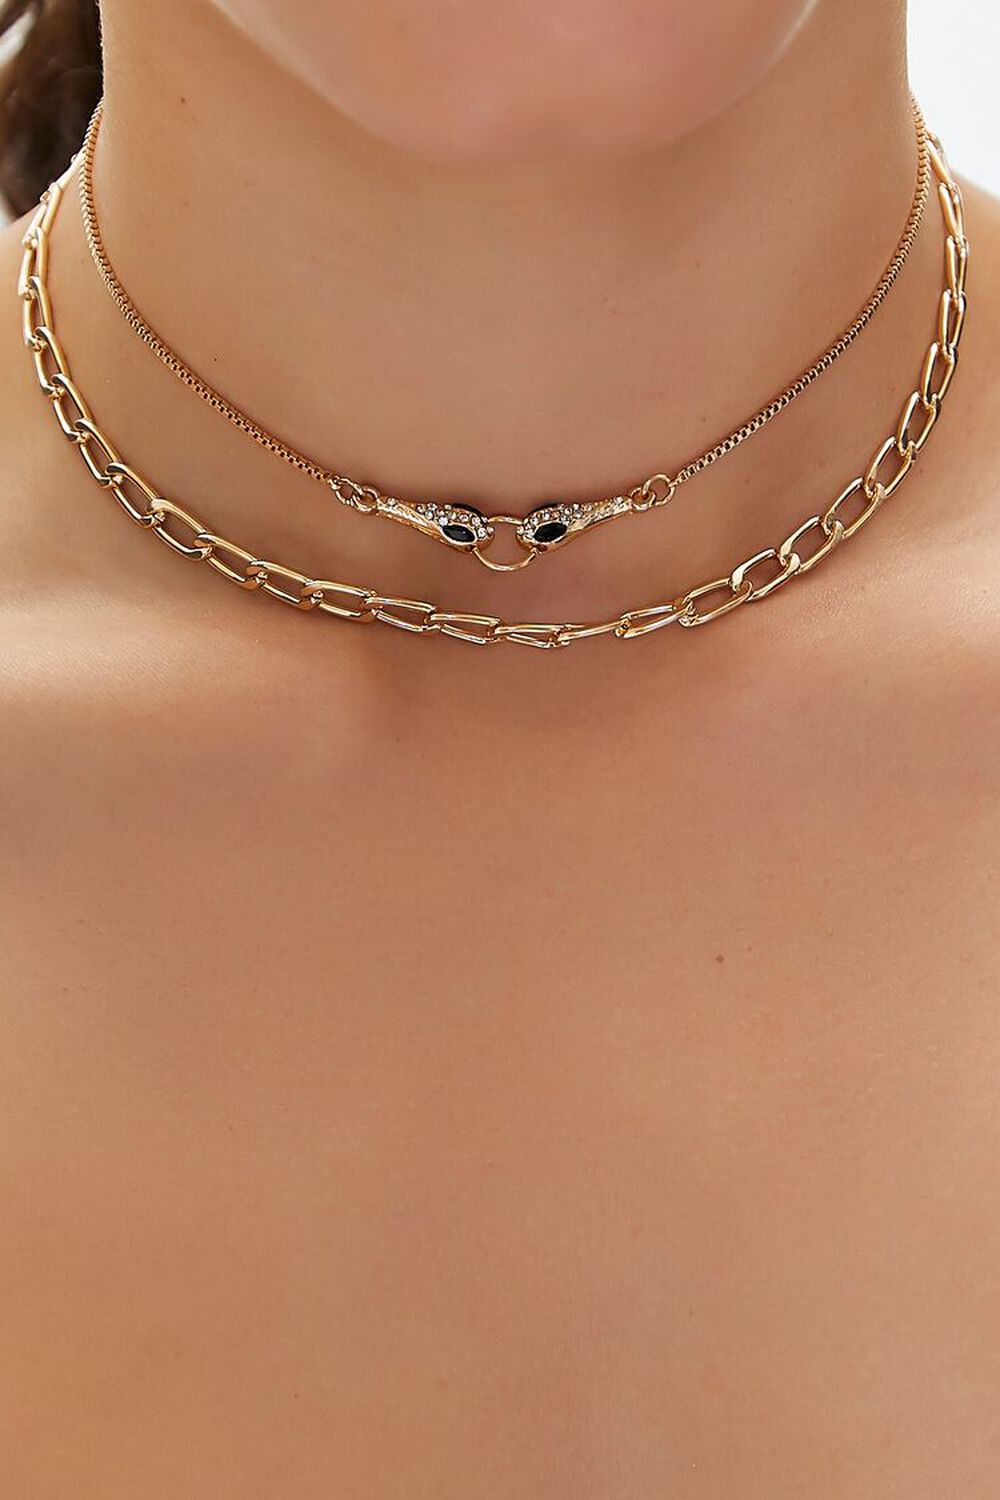 GOLD Rhinestone Snake Choker Necklace Set, image 1